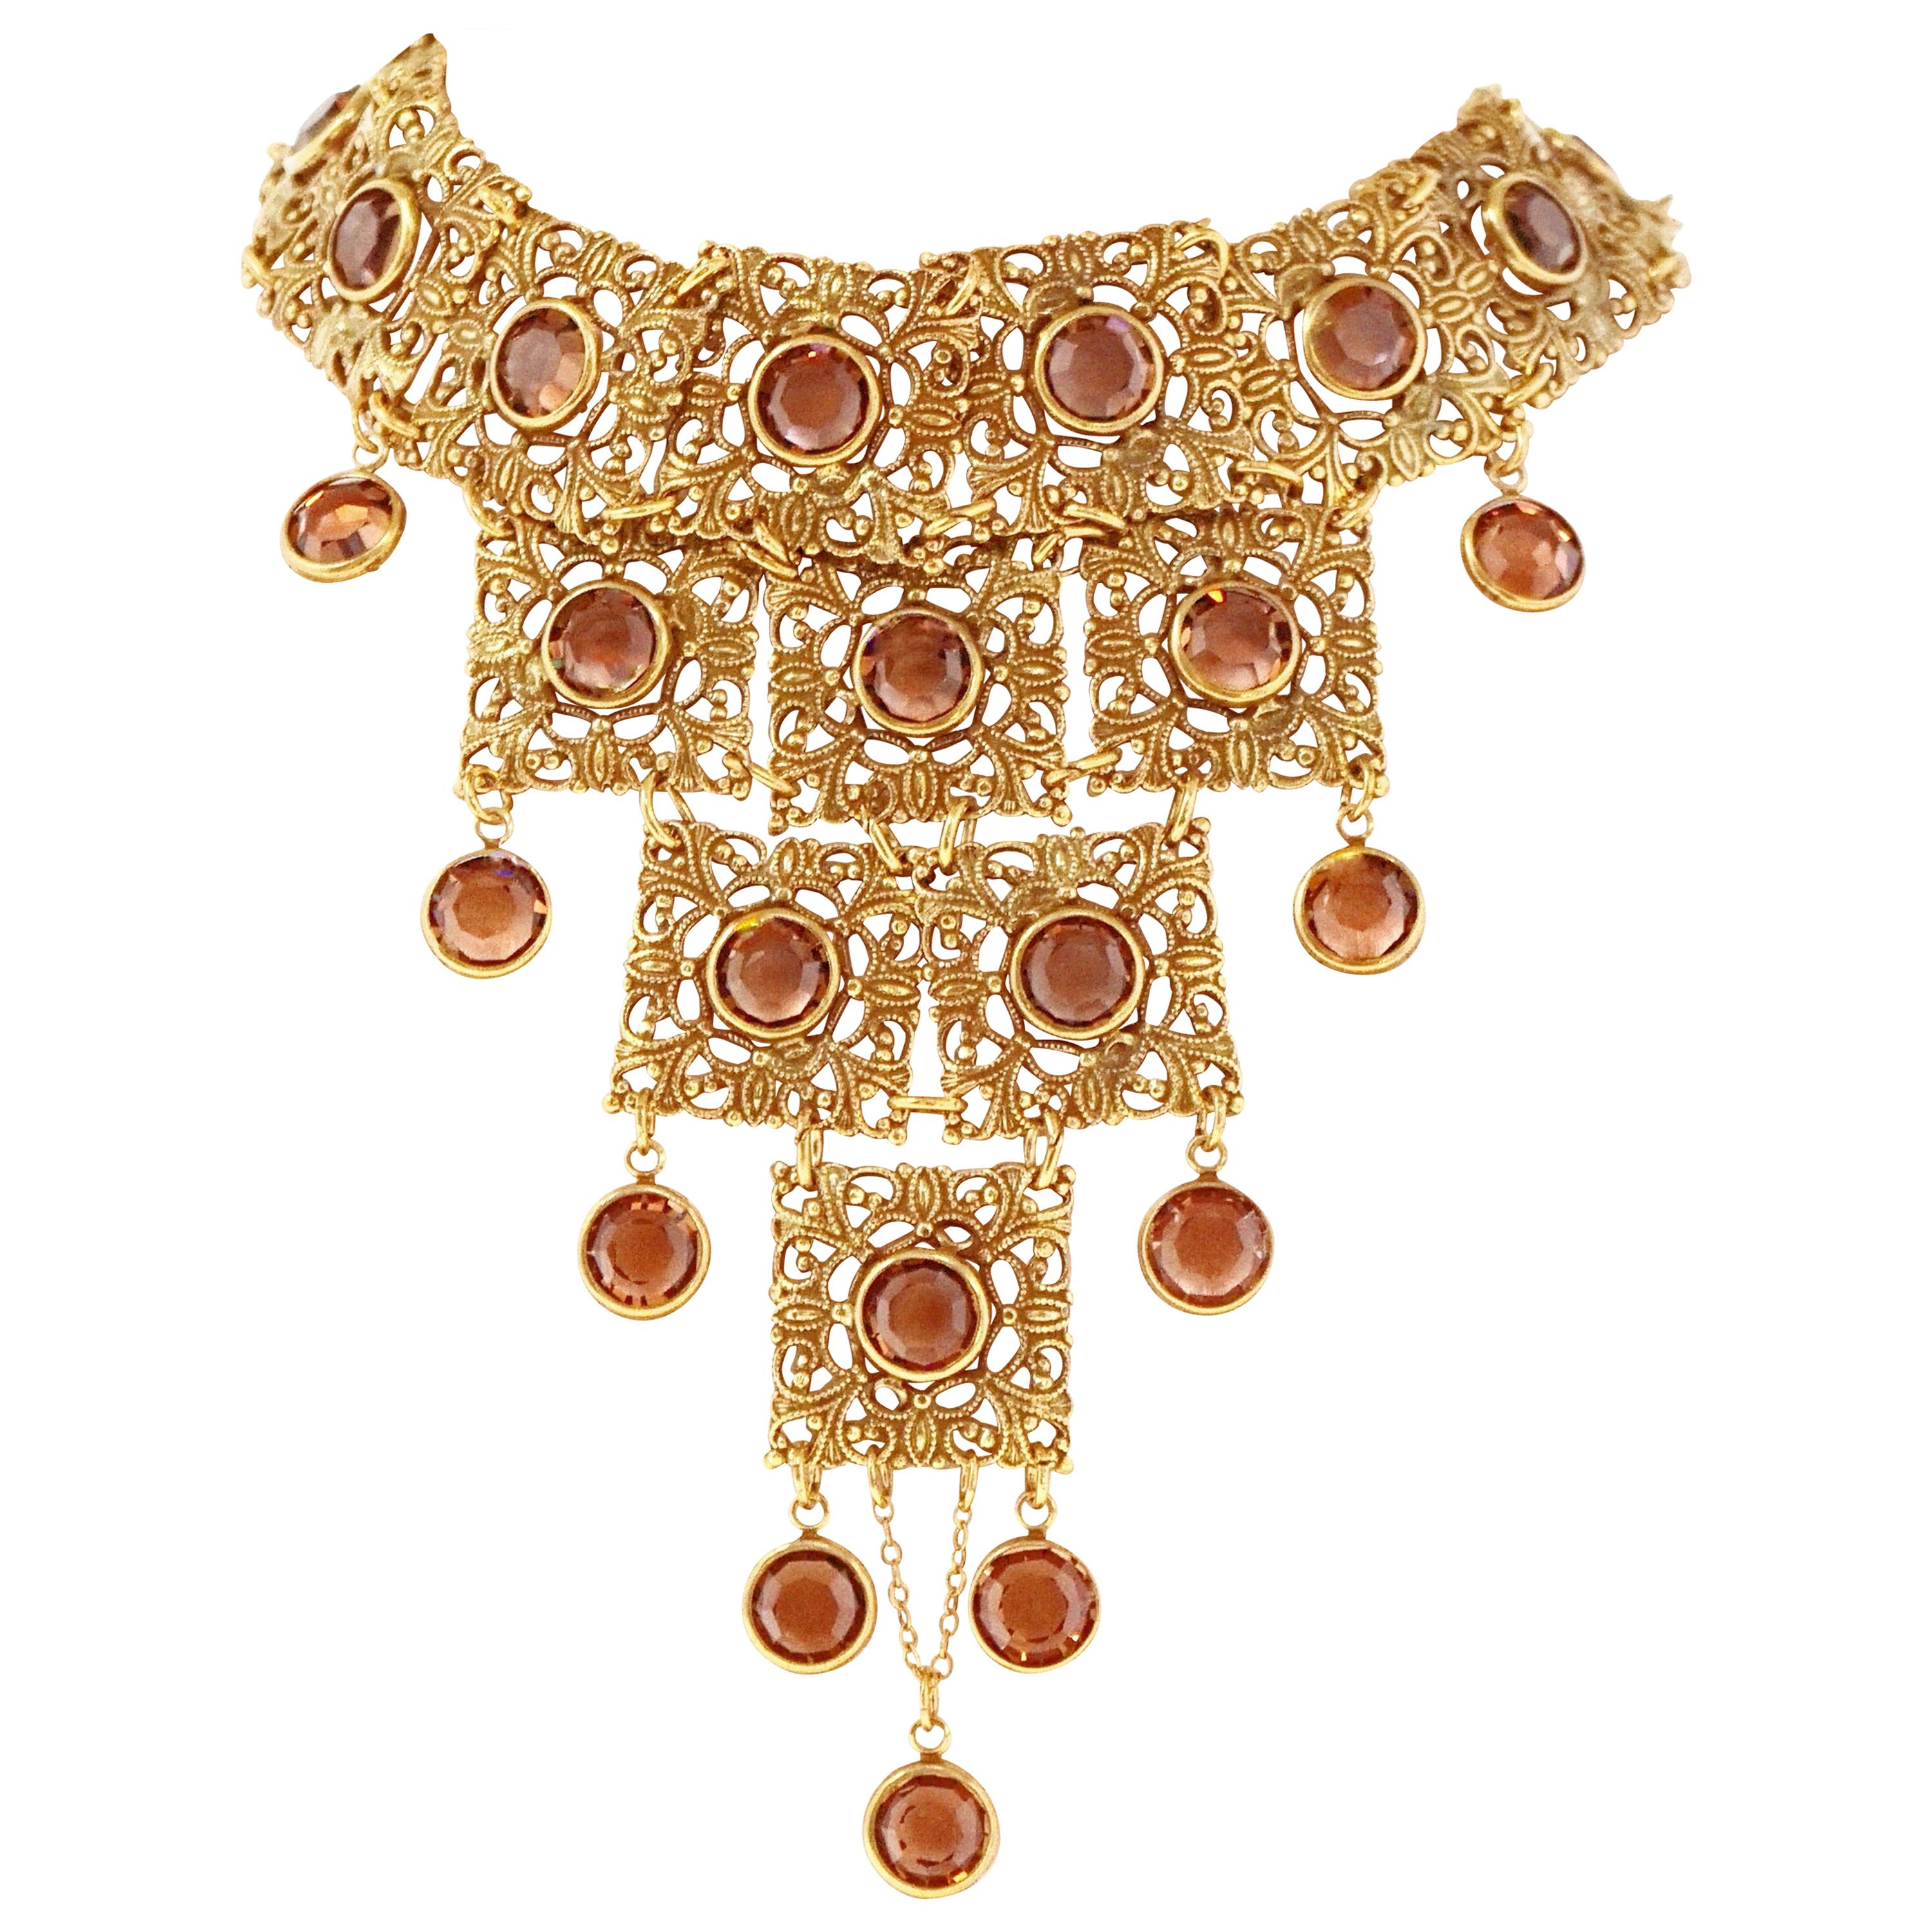 Vintage Goldette Etruscan Revival Bib Necklace with Topaz Crystals, 1970s